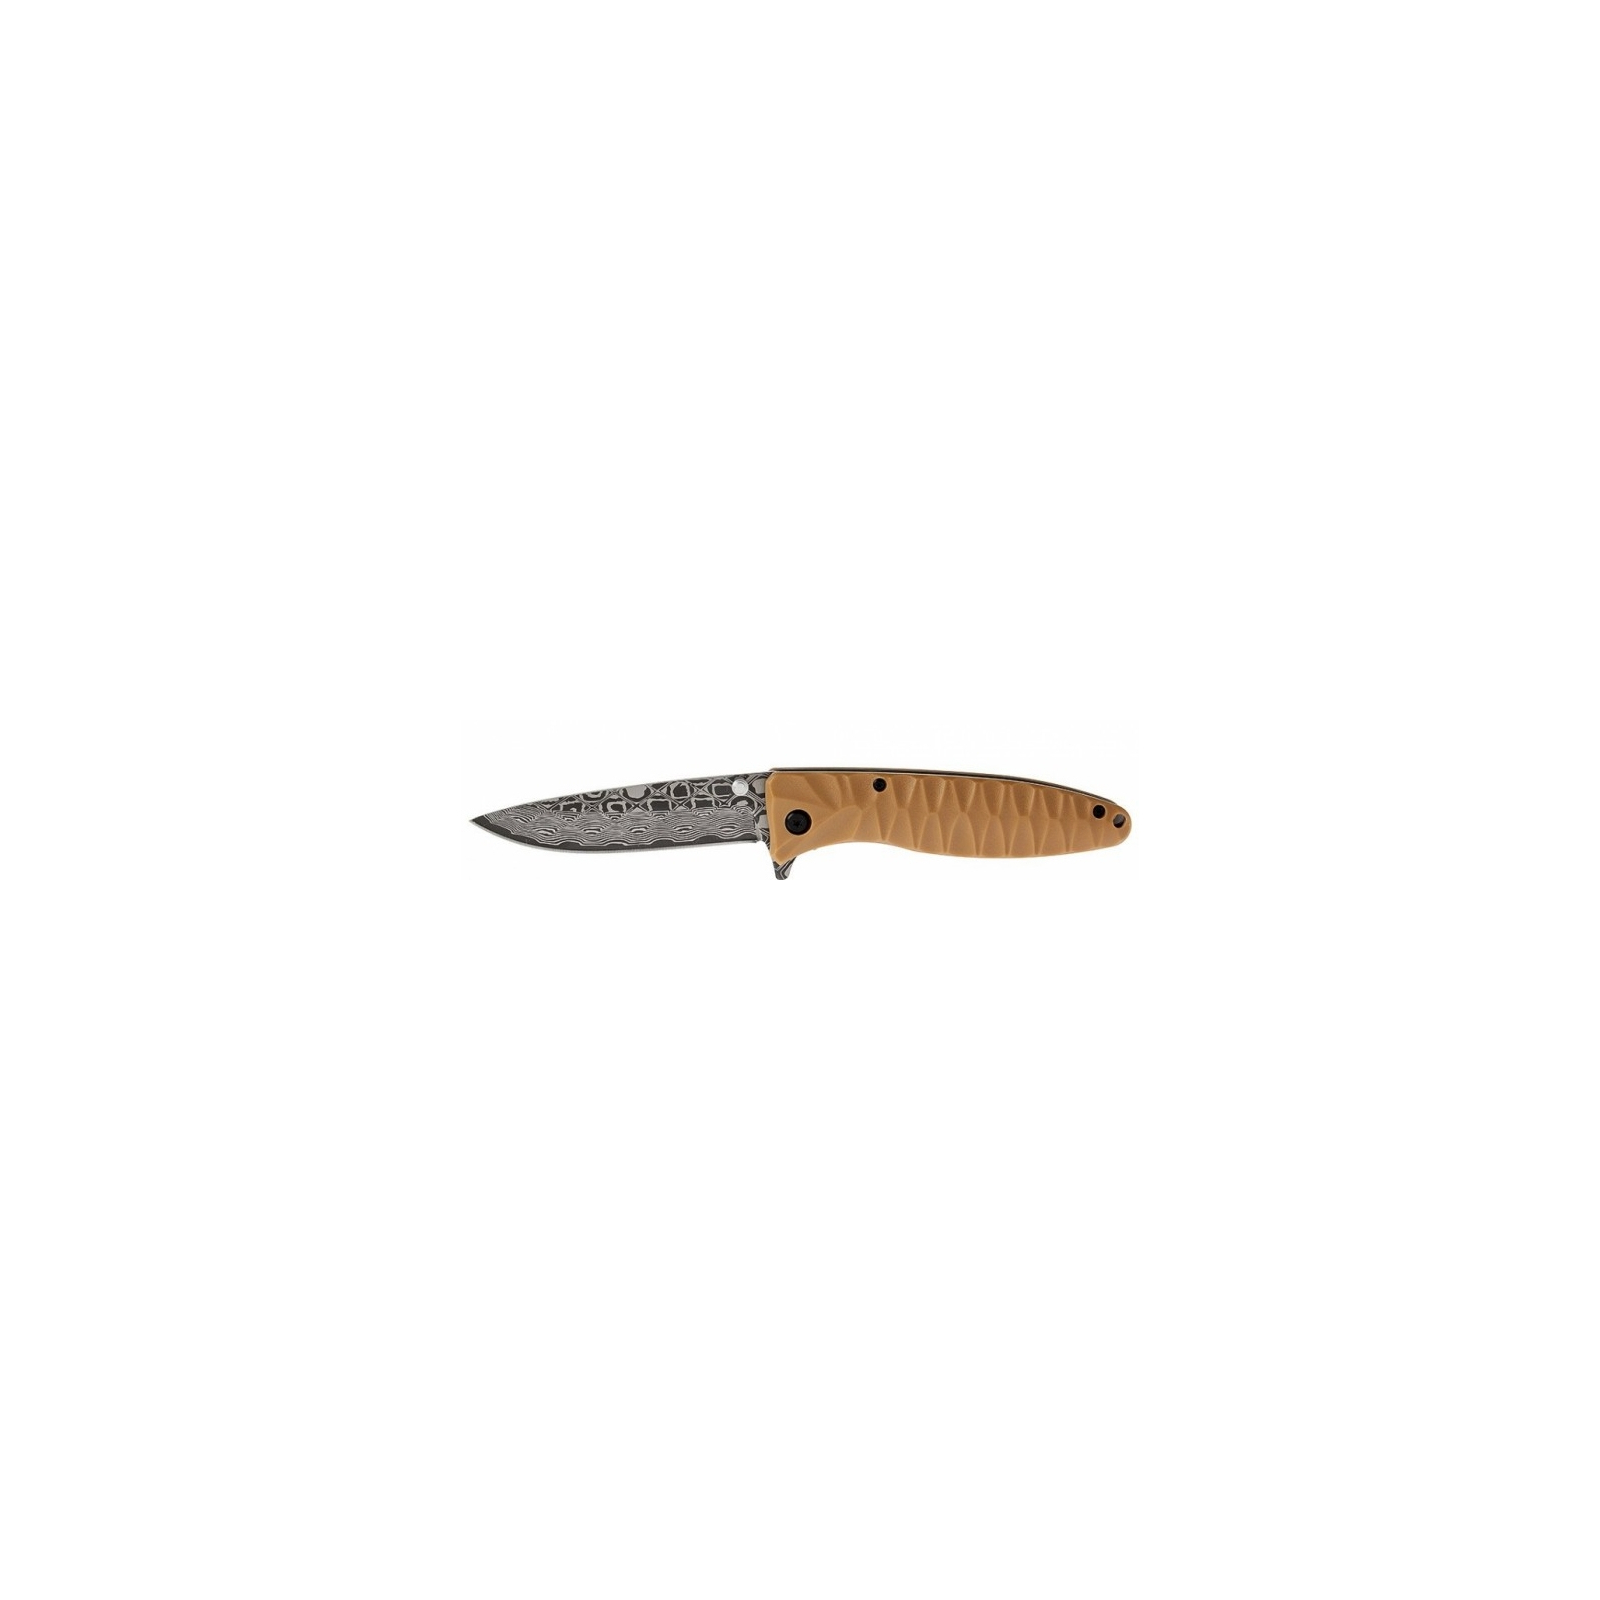 Нож Firebird by Ganzo G620y-2 (F620y-2)